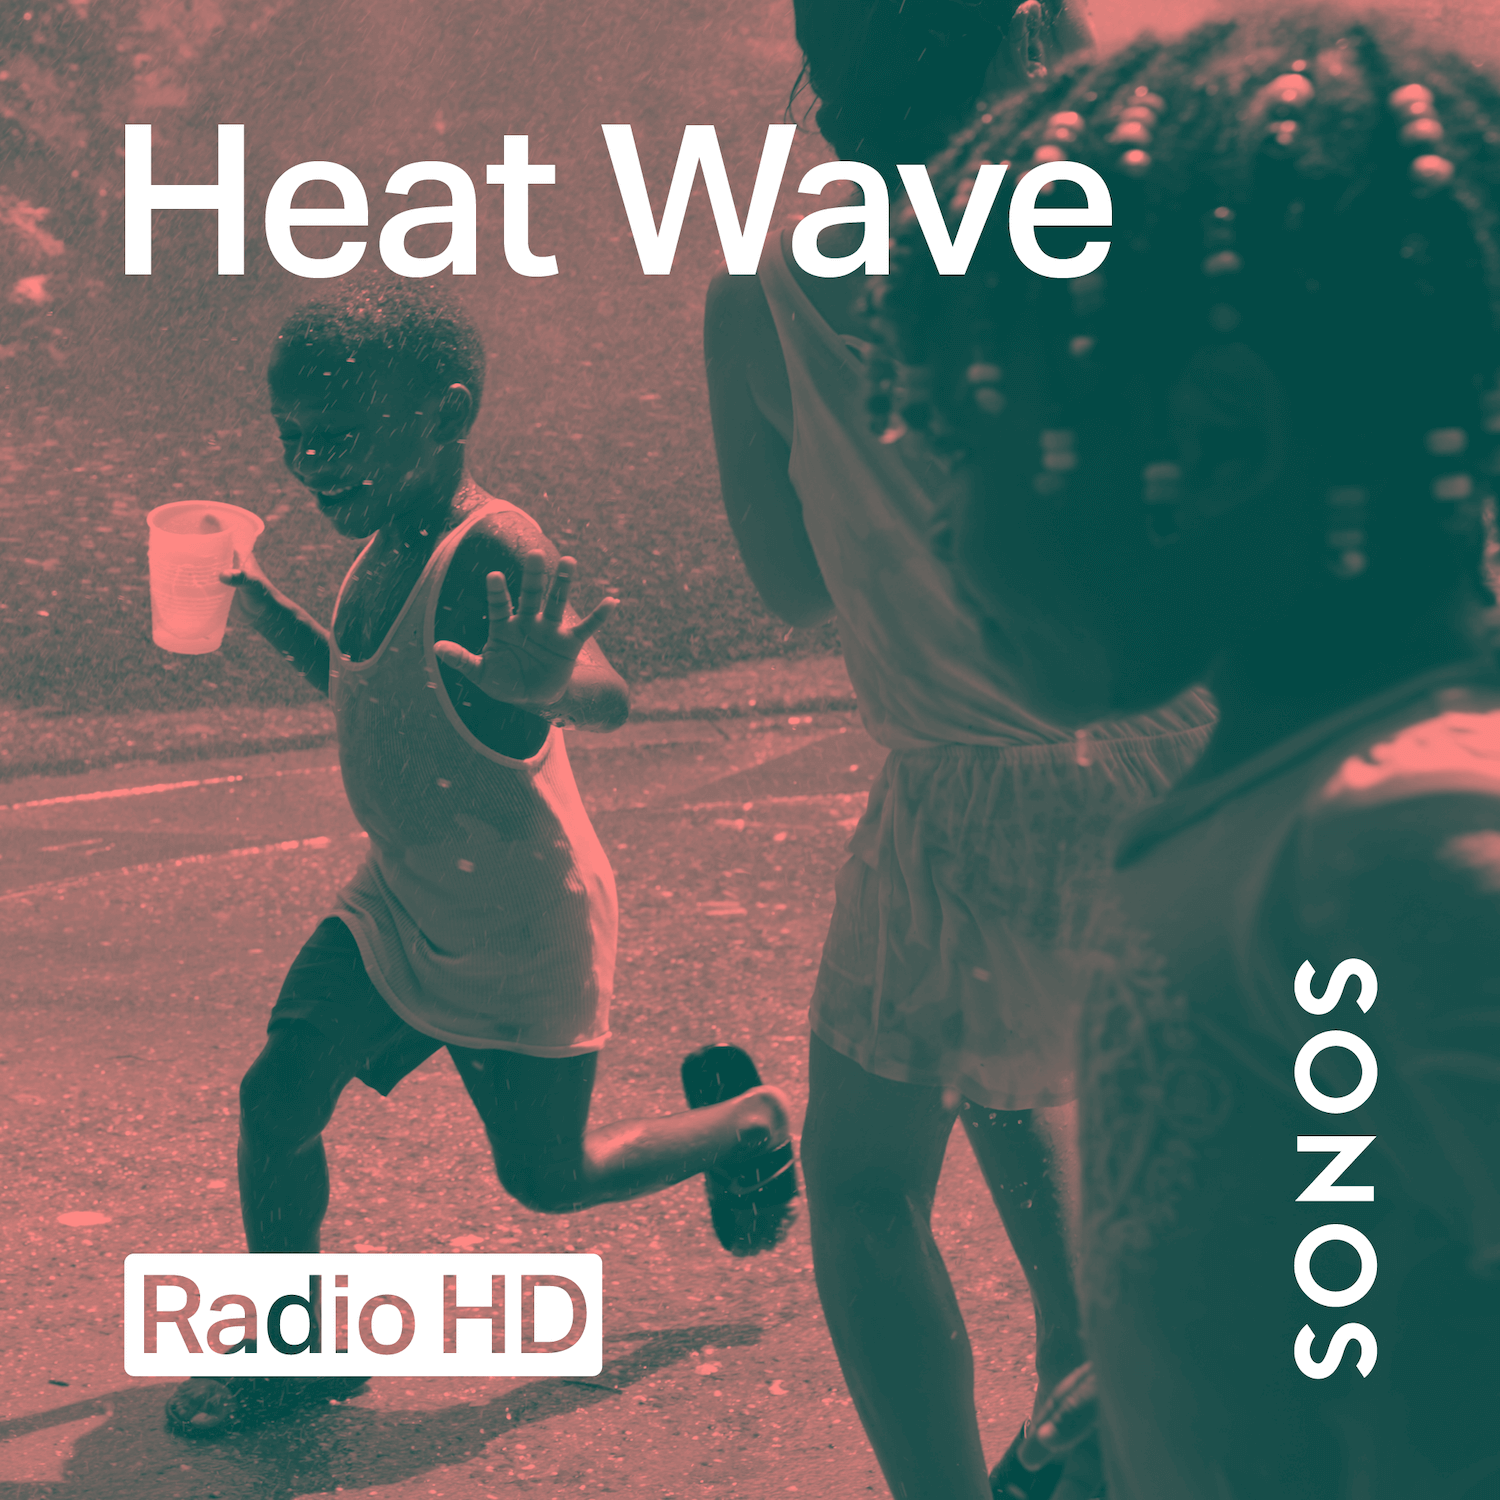 Sonos Radio HD Heat Wave